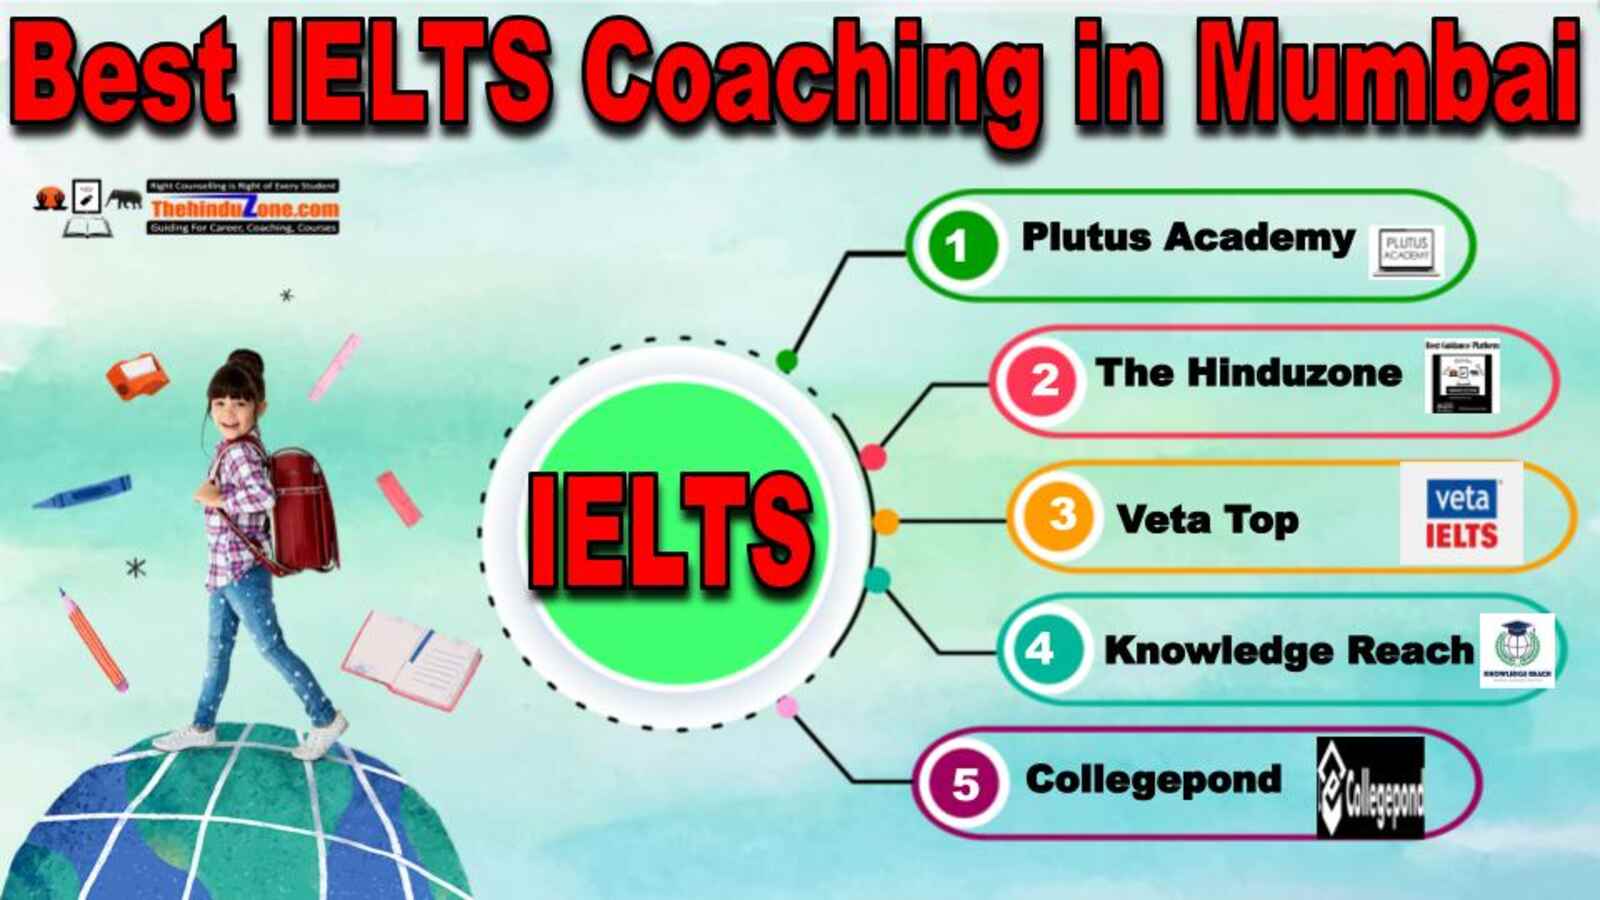 Best IELTS Coaching in Mumbai